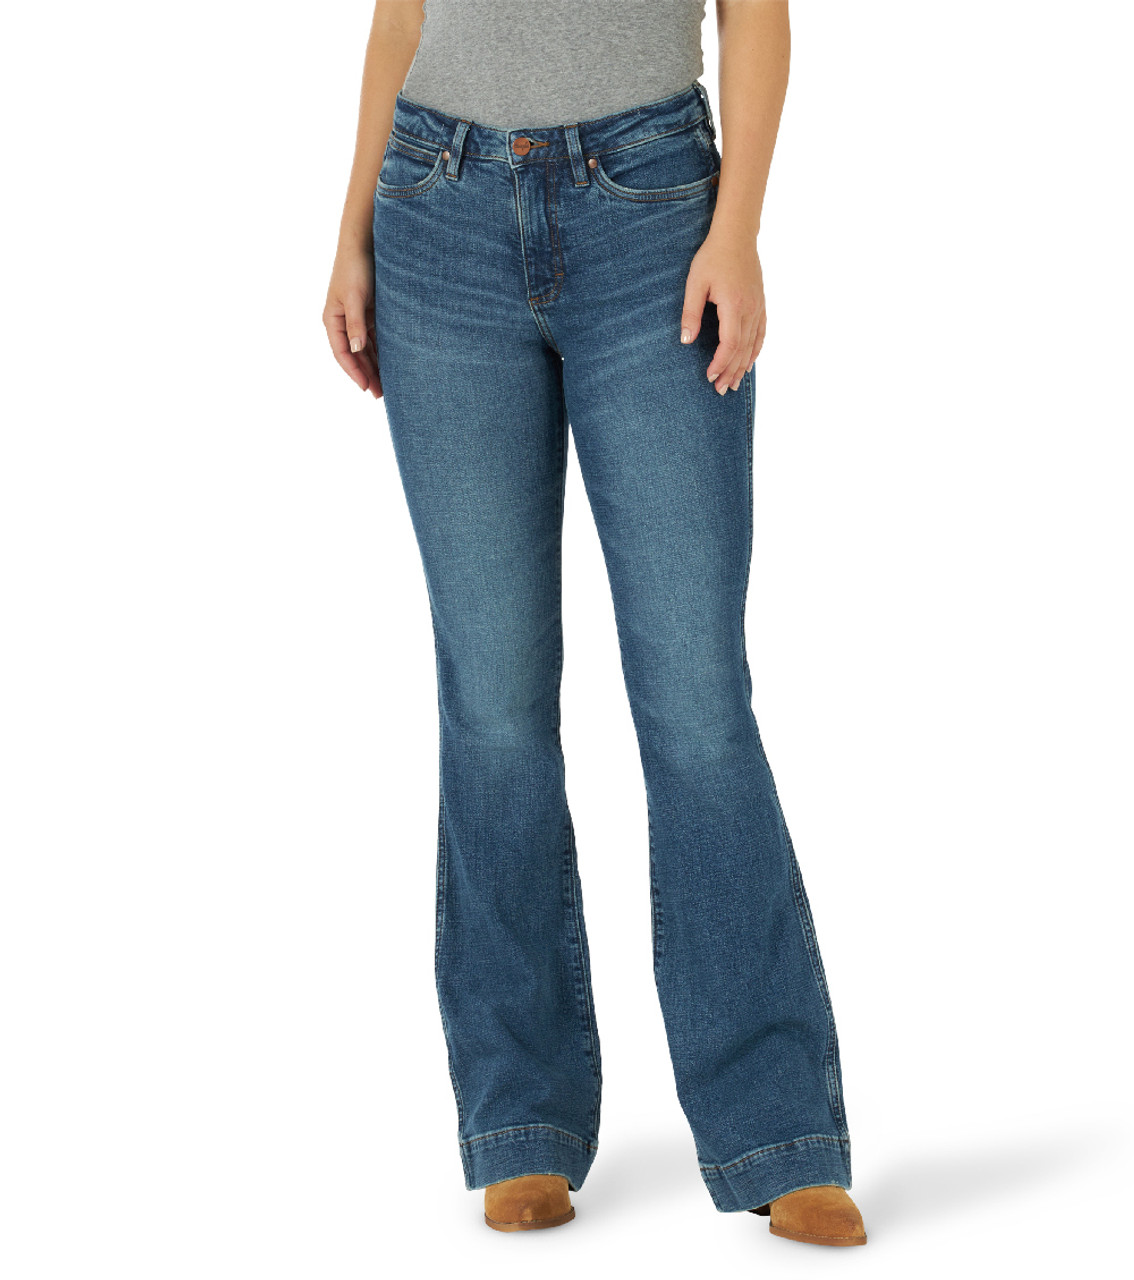 Wrangler Retro Green High Rise Trouser Jean- Women's Jeans